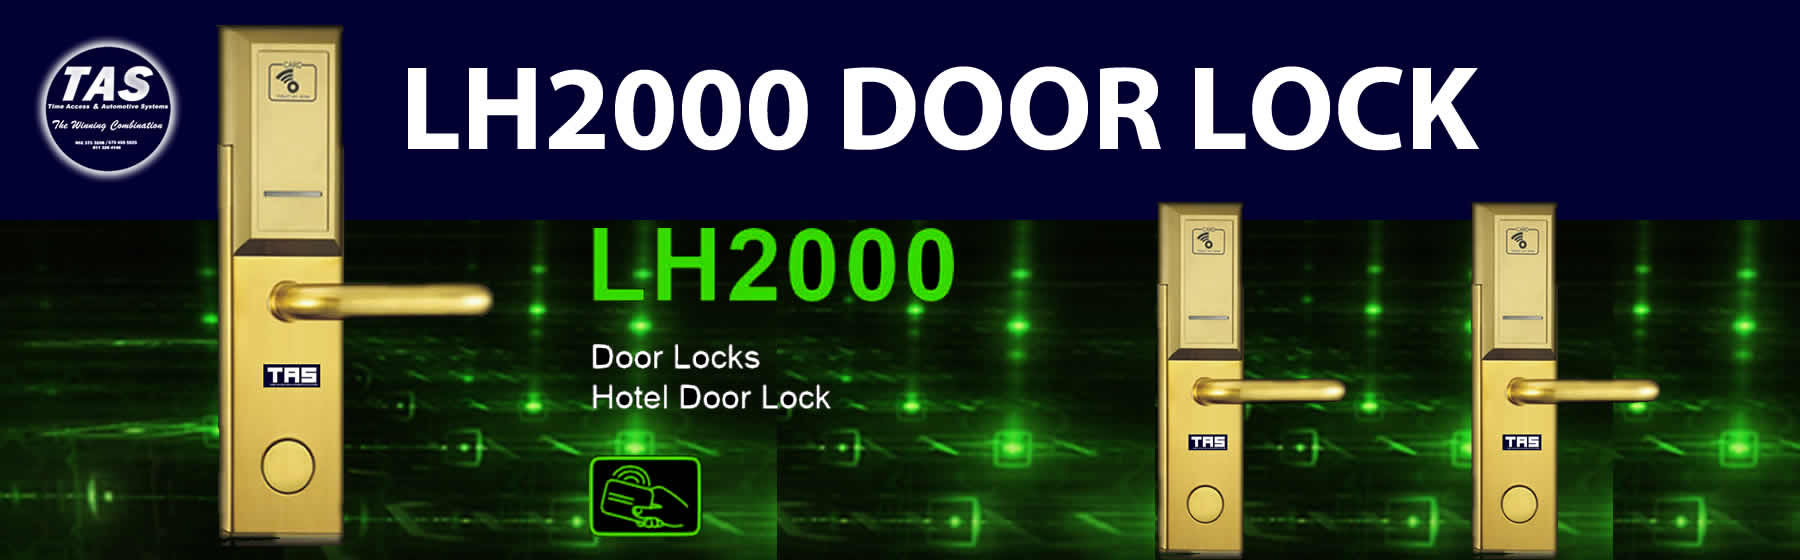 hl1000 door locks banner